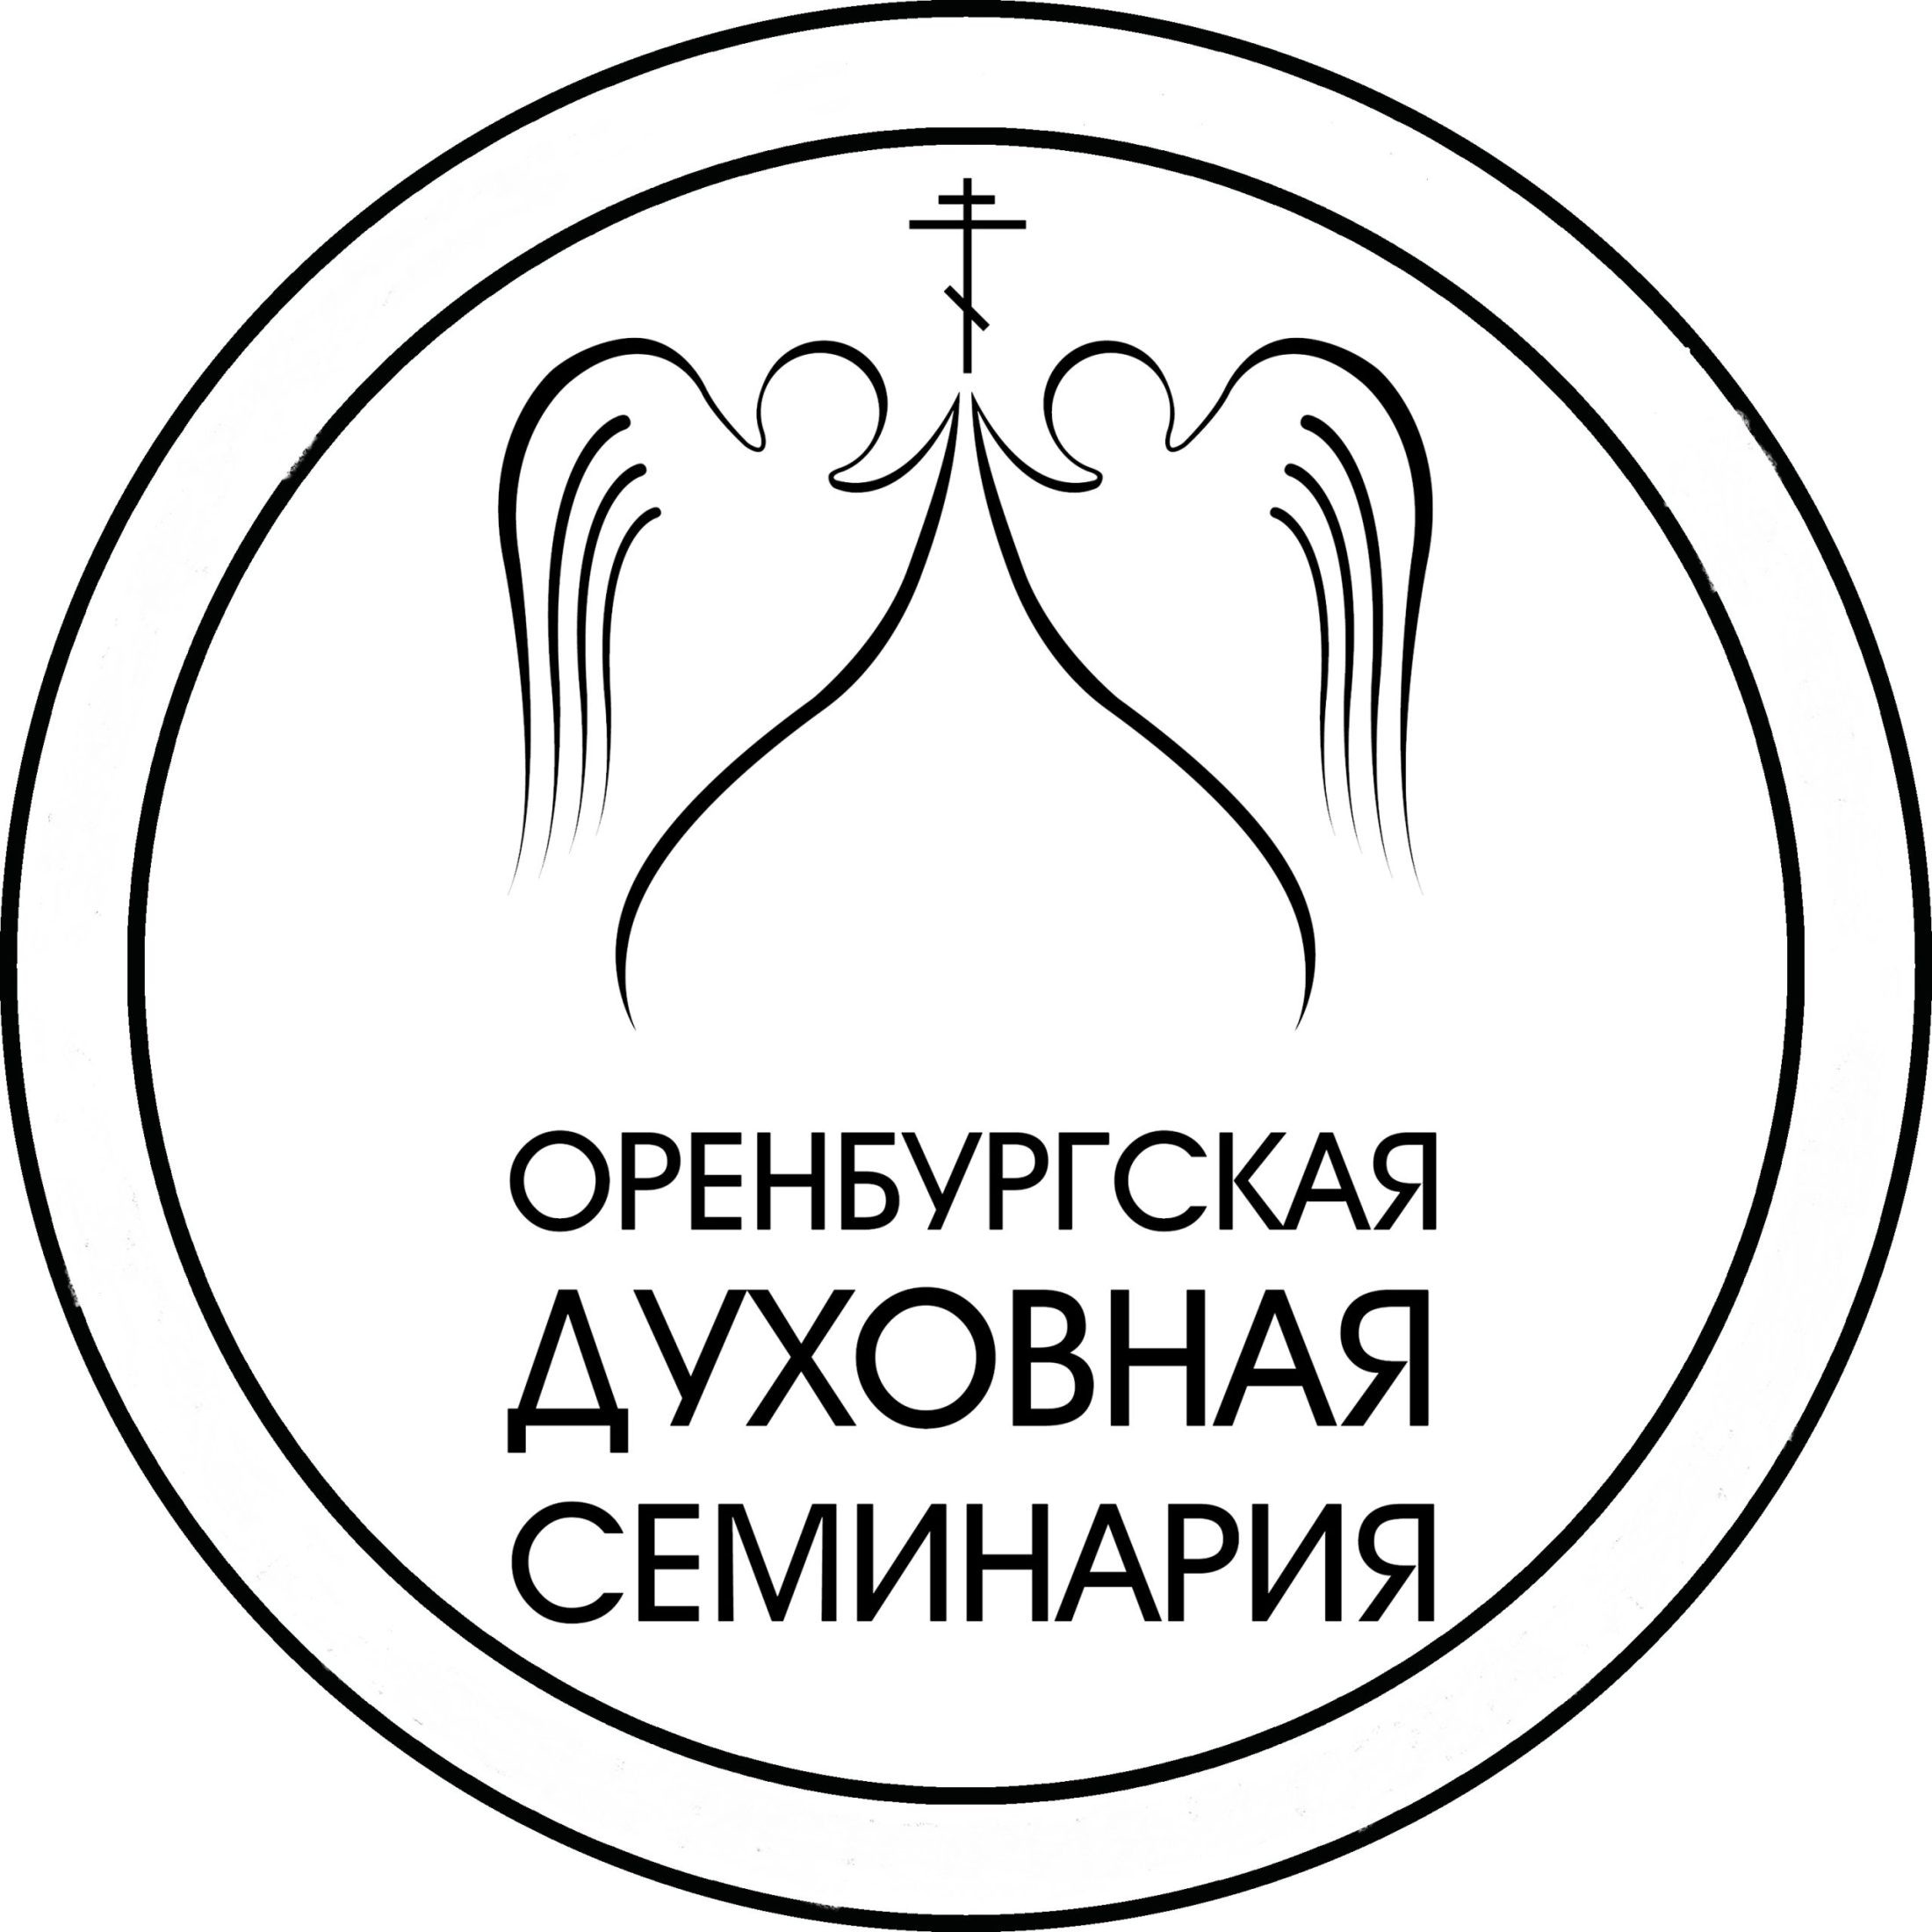 В Оренбургской духовной семинарии состоится I Международная научно-практическая конференция